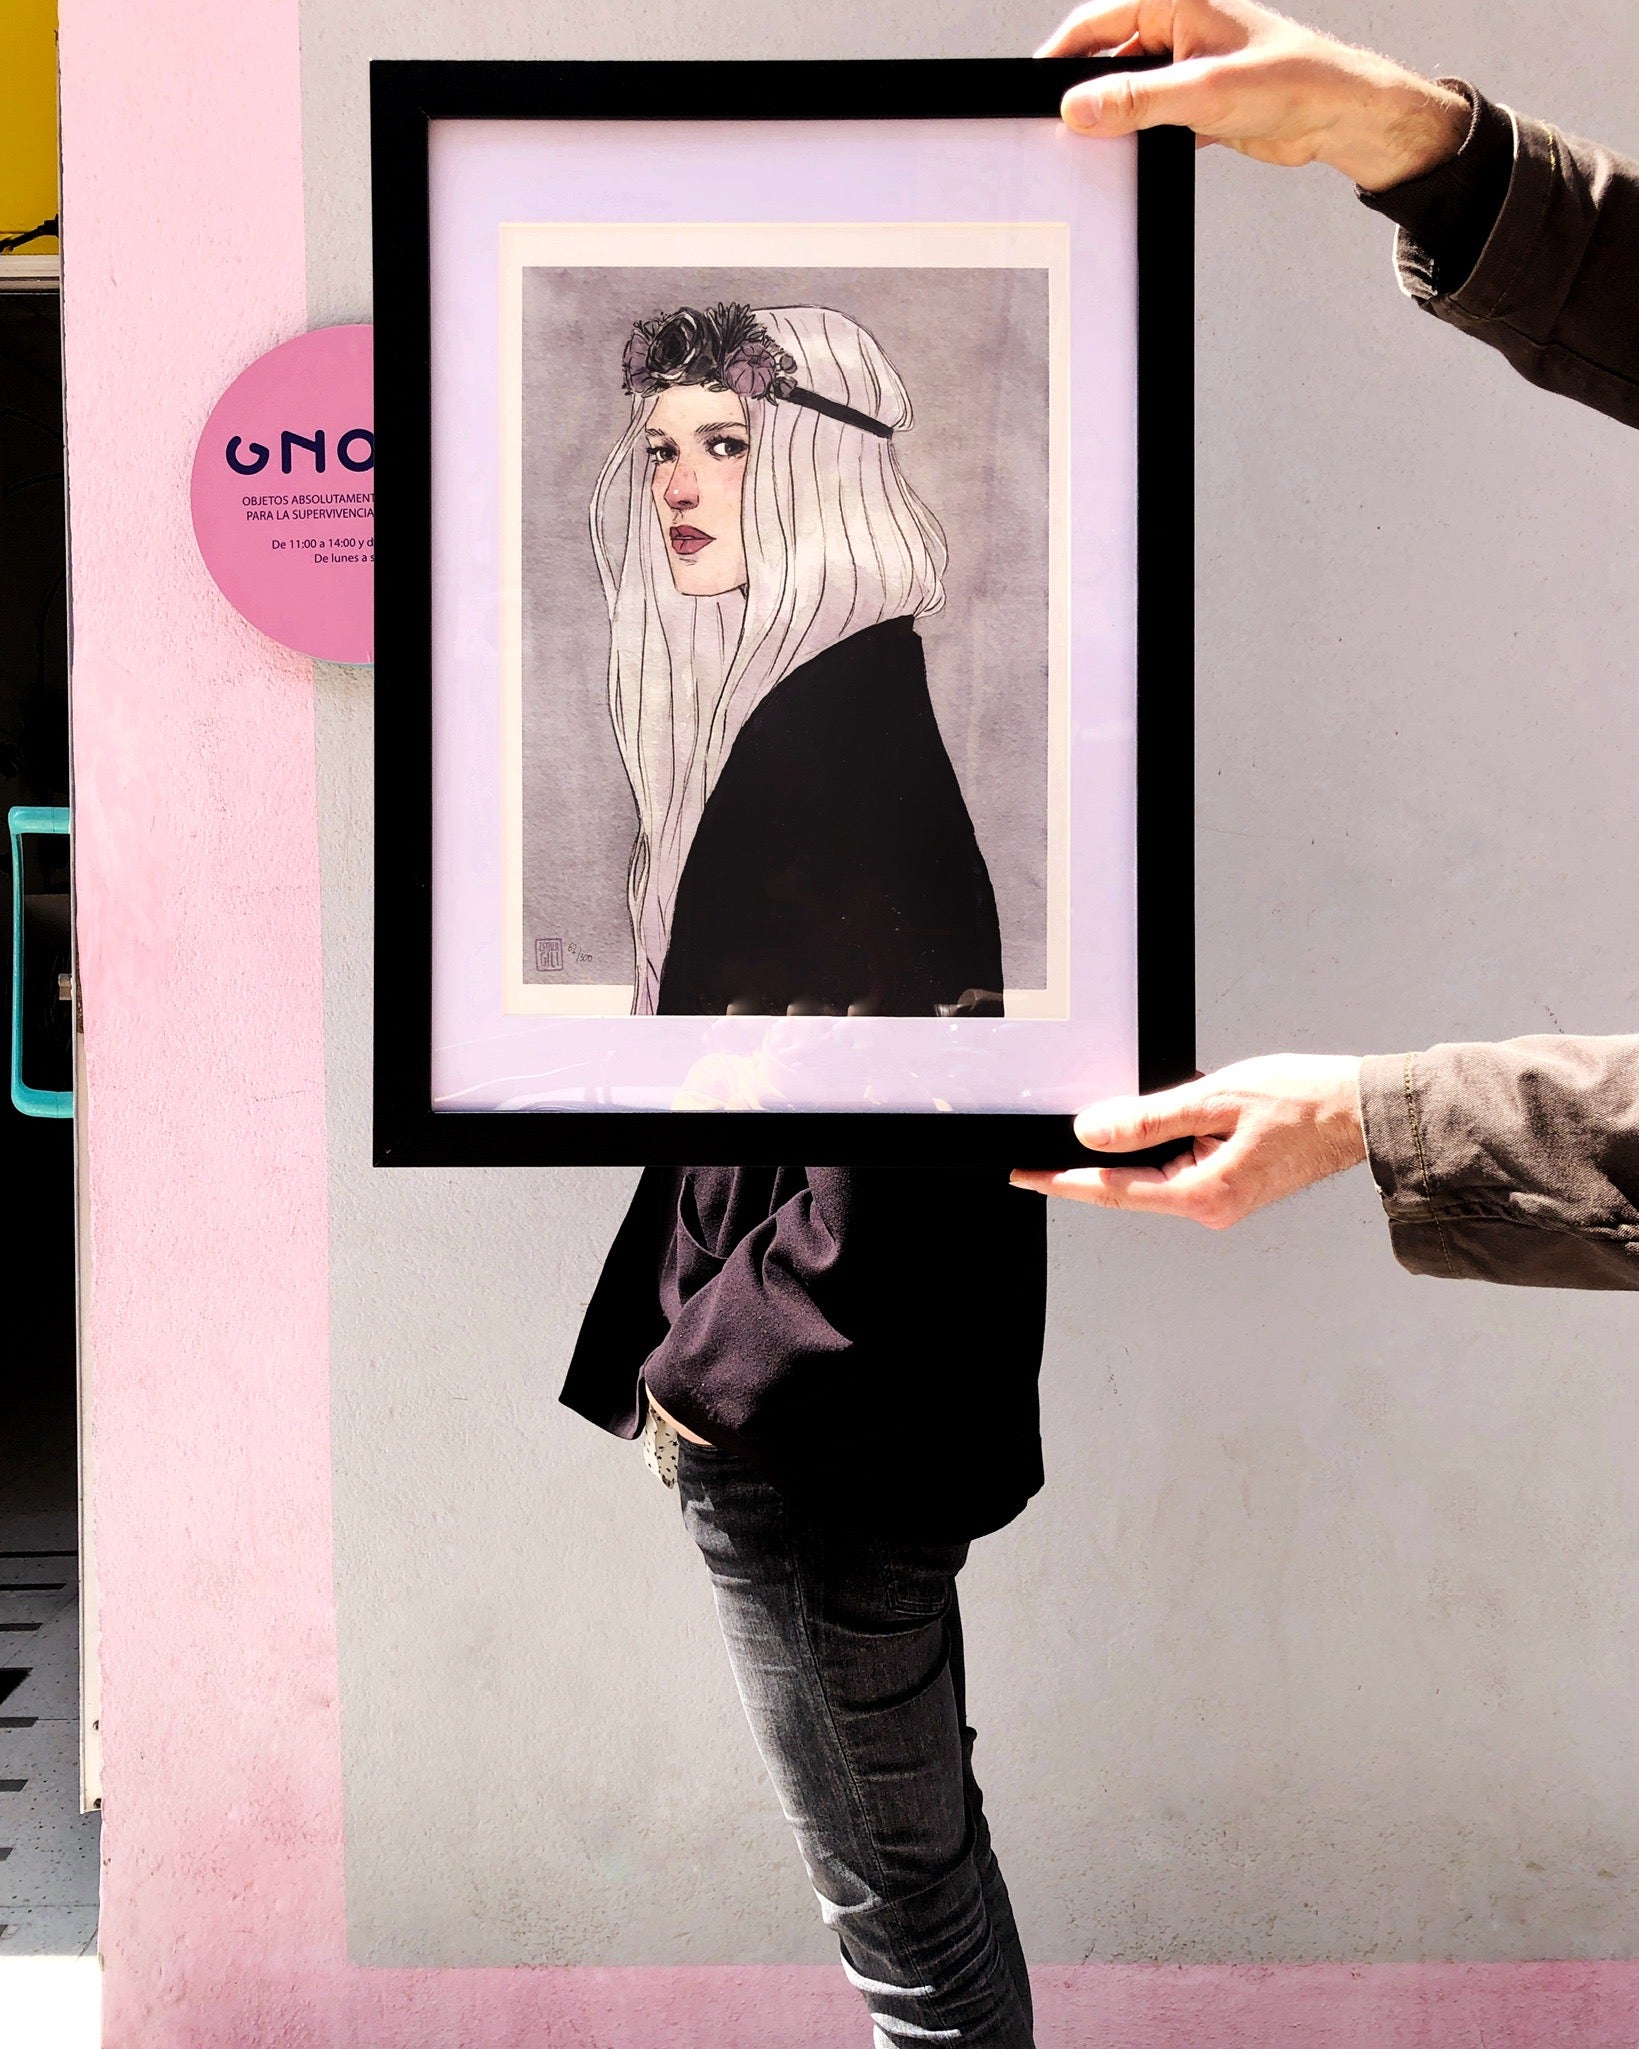 Una persona posa con un marco negro para fotos o prints con una lámina de Esther Gili